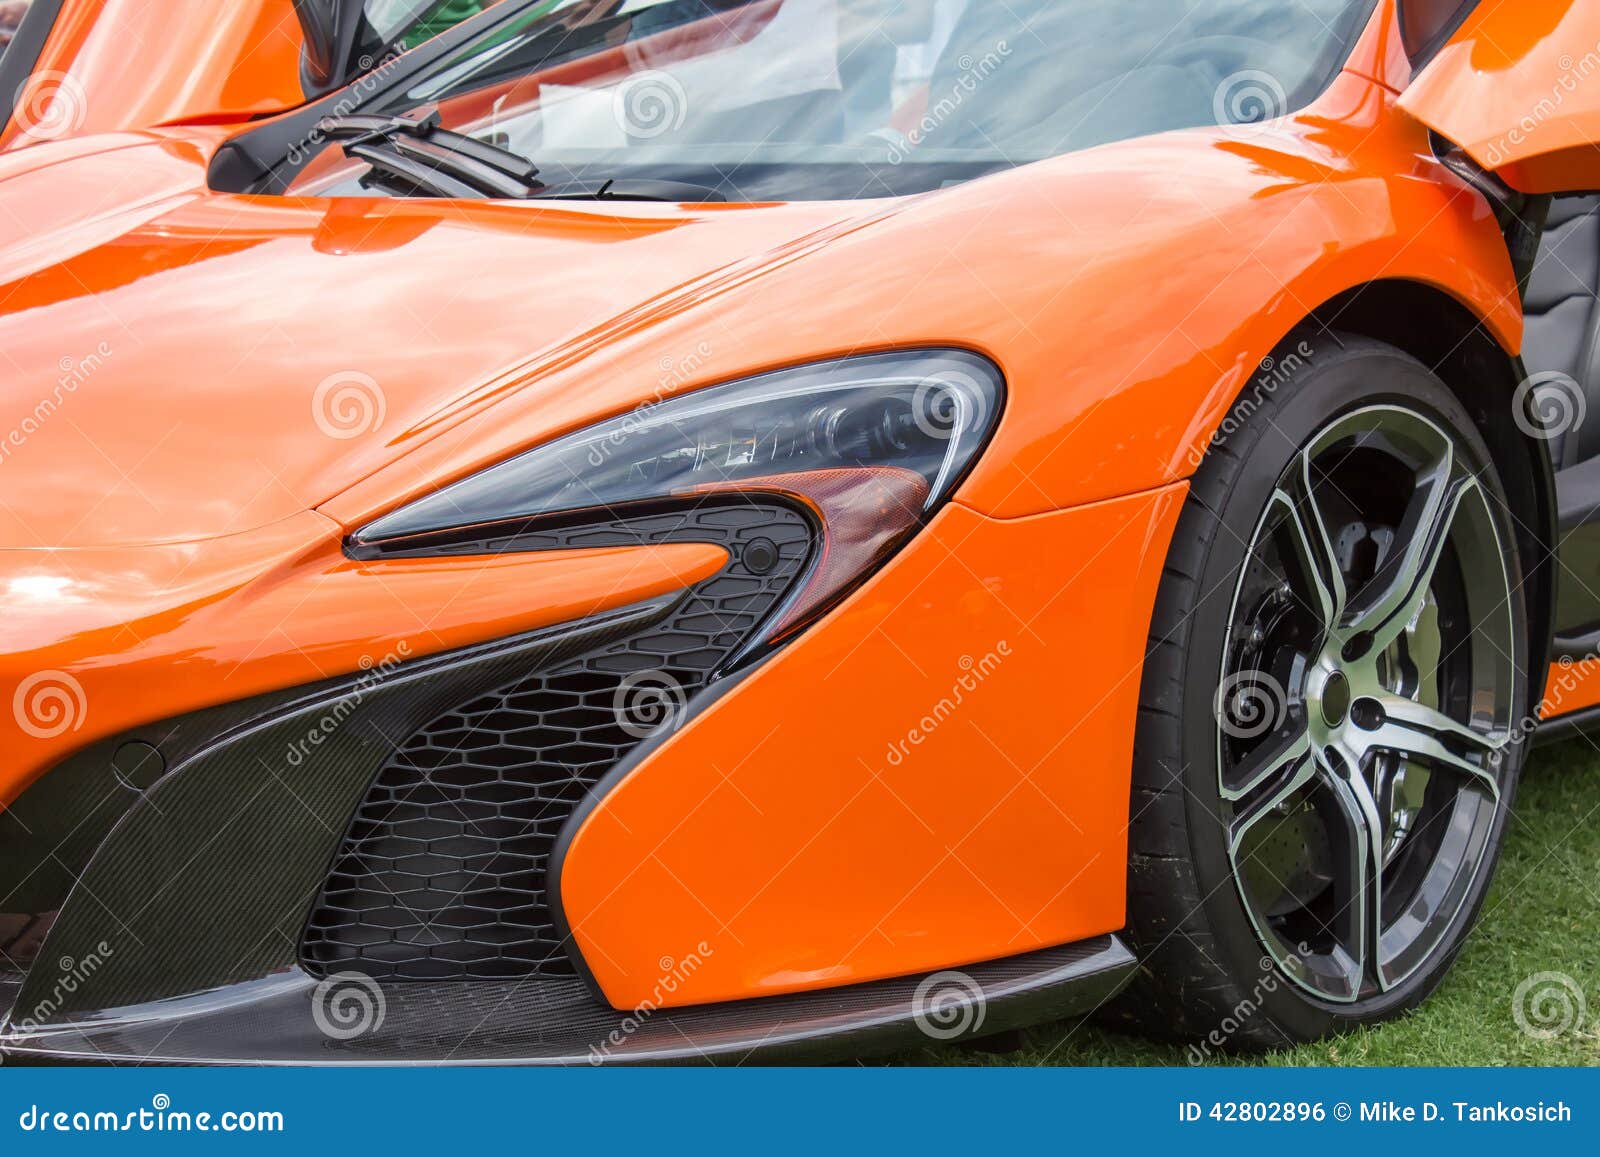 Orange Sports Car Left Front Stock Photo - Image of ...
